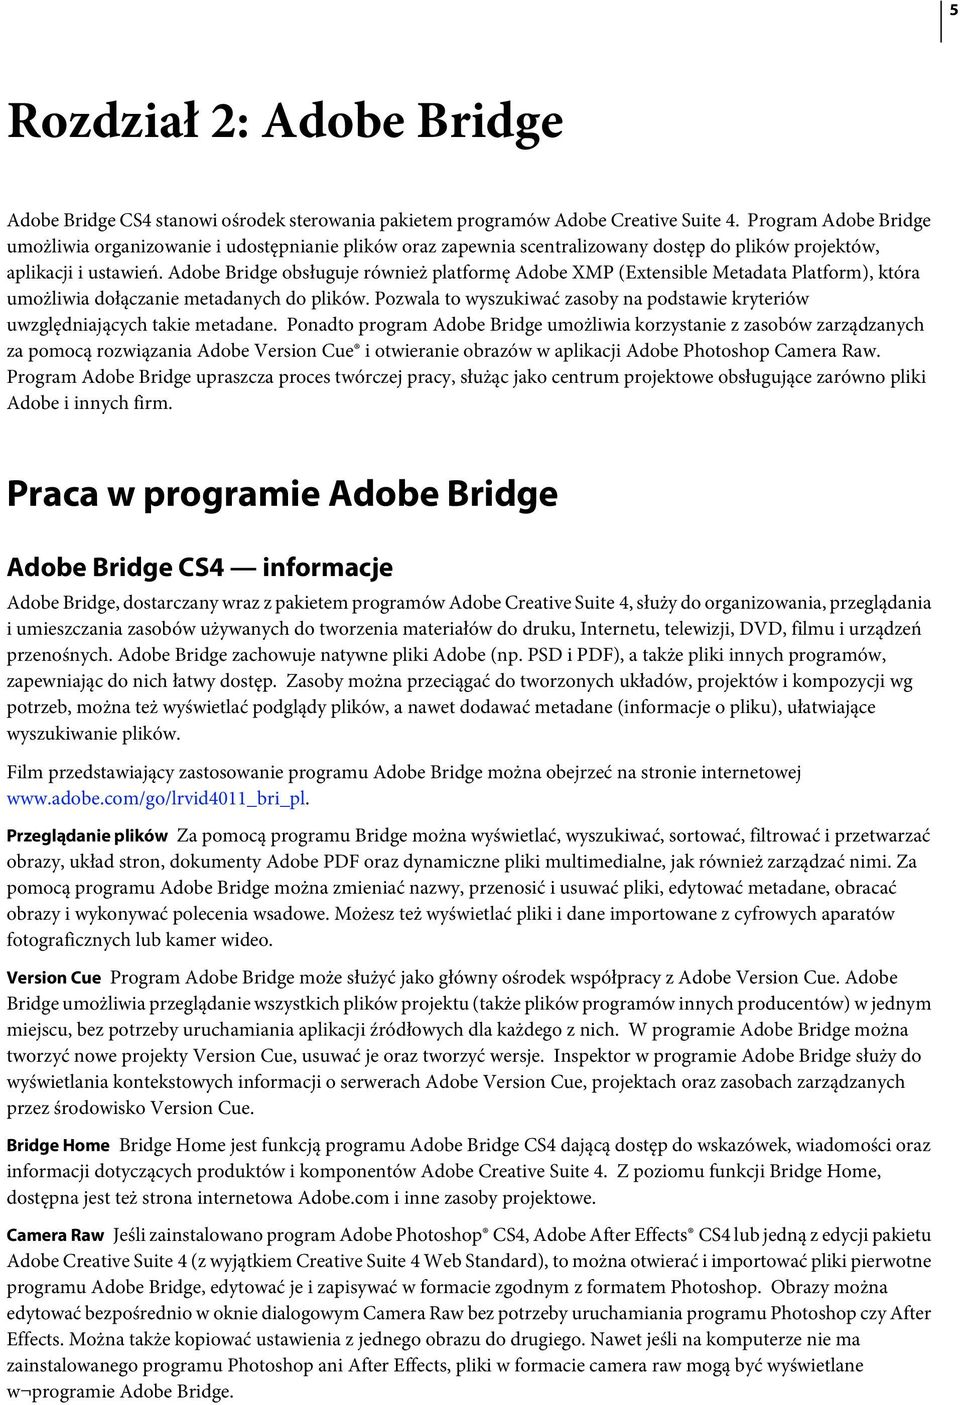 Adobe Bridge obsługuje również platformę Adobe XMP (Extensible Metadata Platform), która umożliwia dołączanie metadanych do plików.